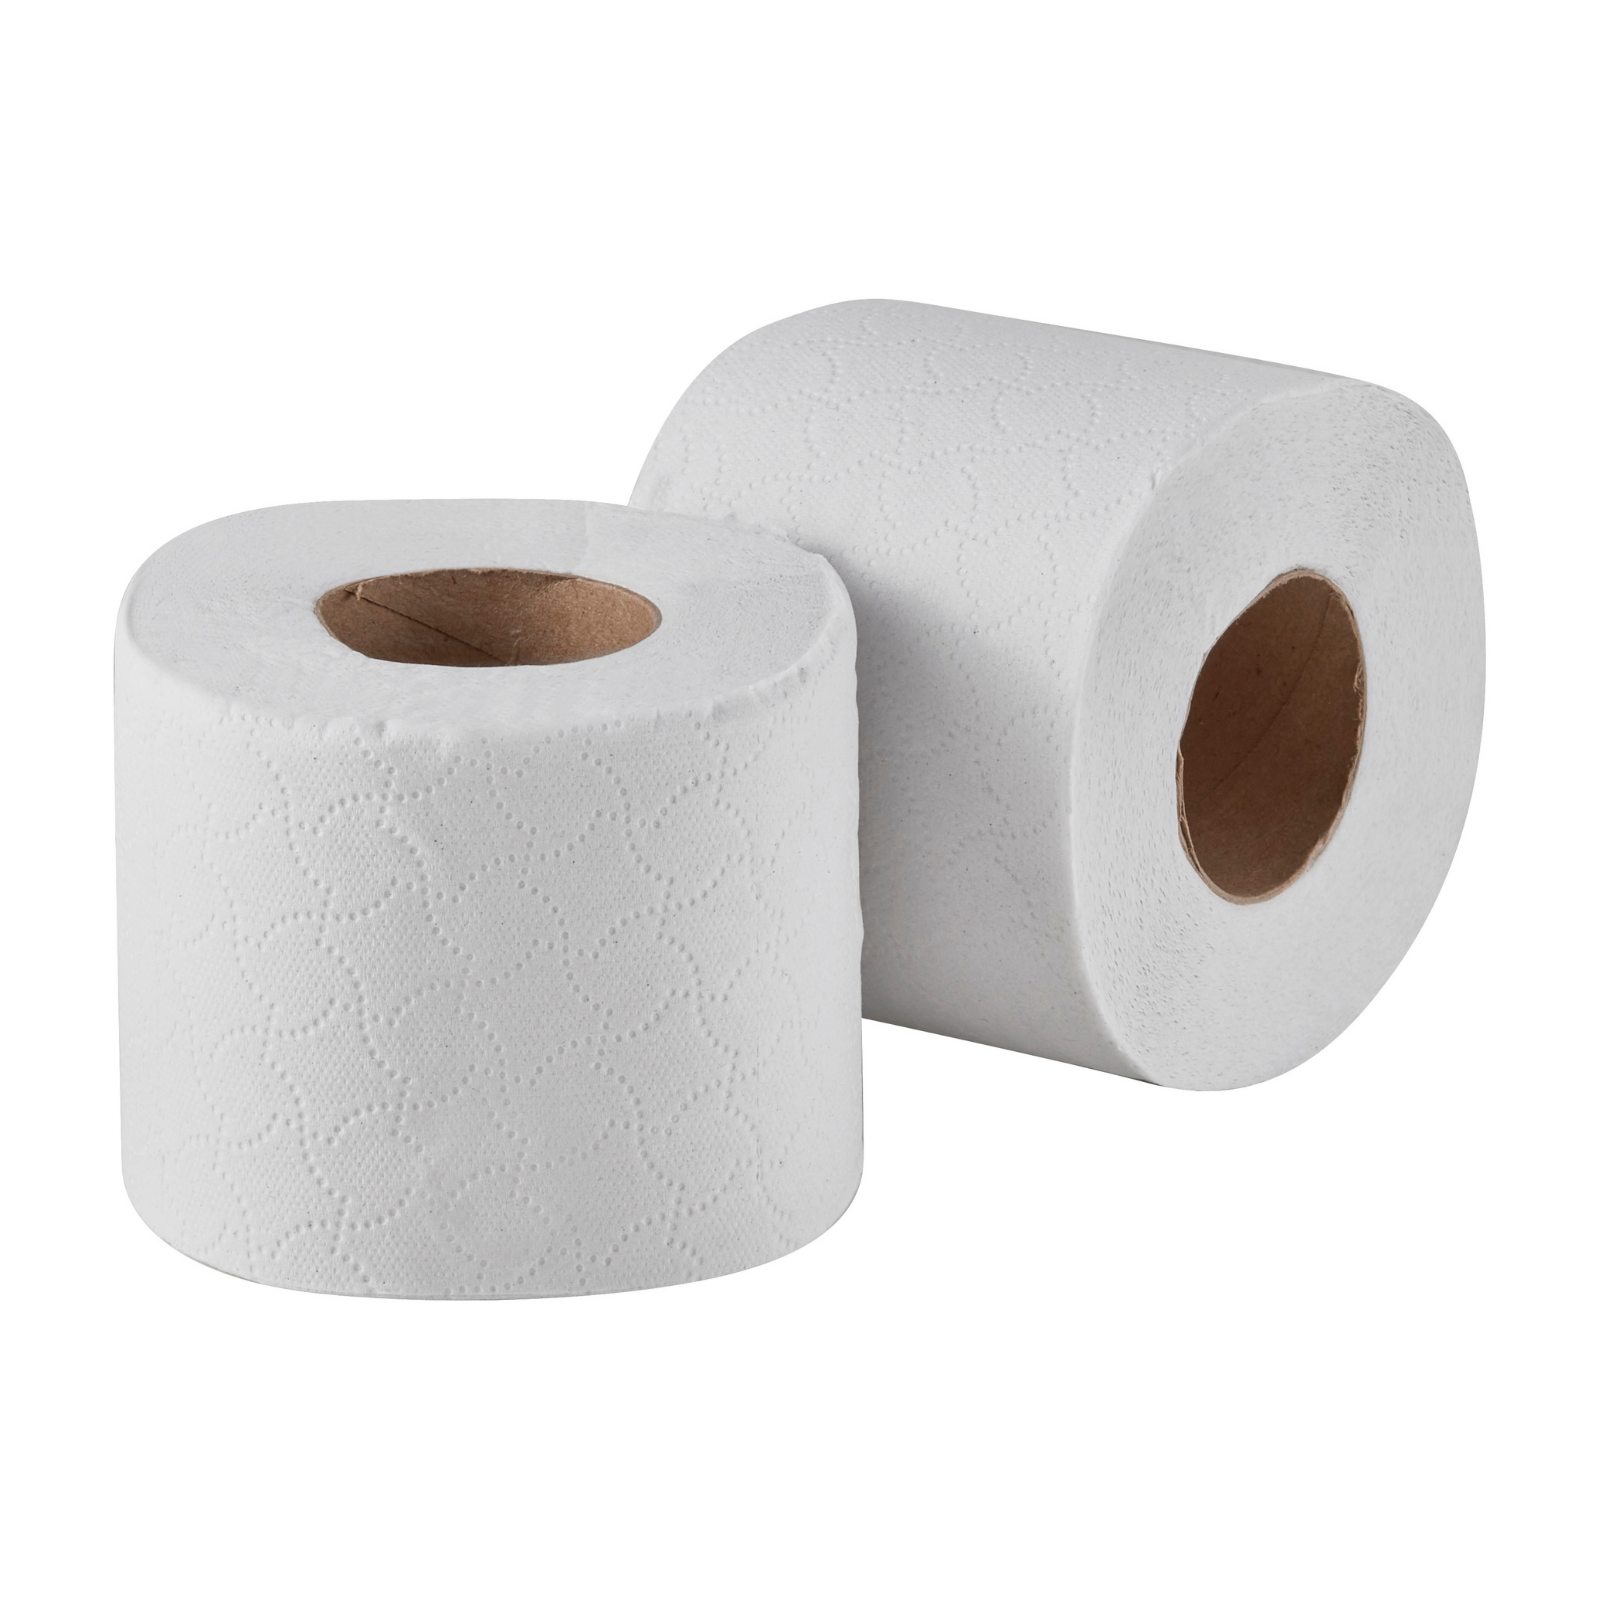 2 Ply Standard Toilet Rolls - 320 sheet